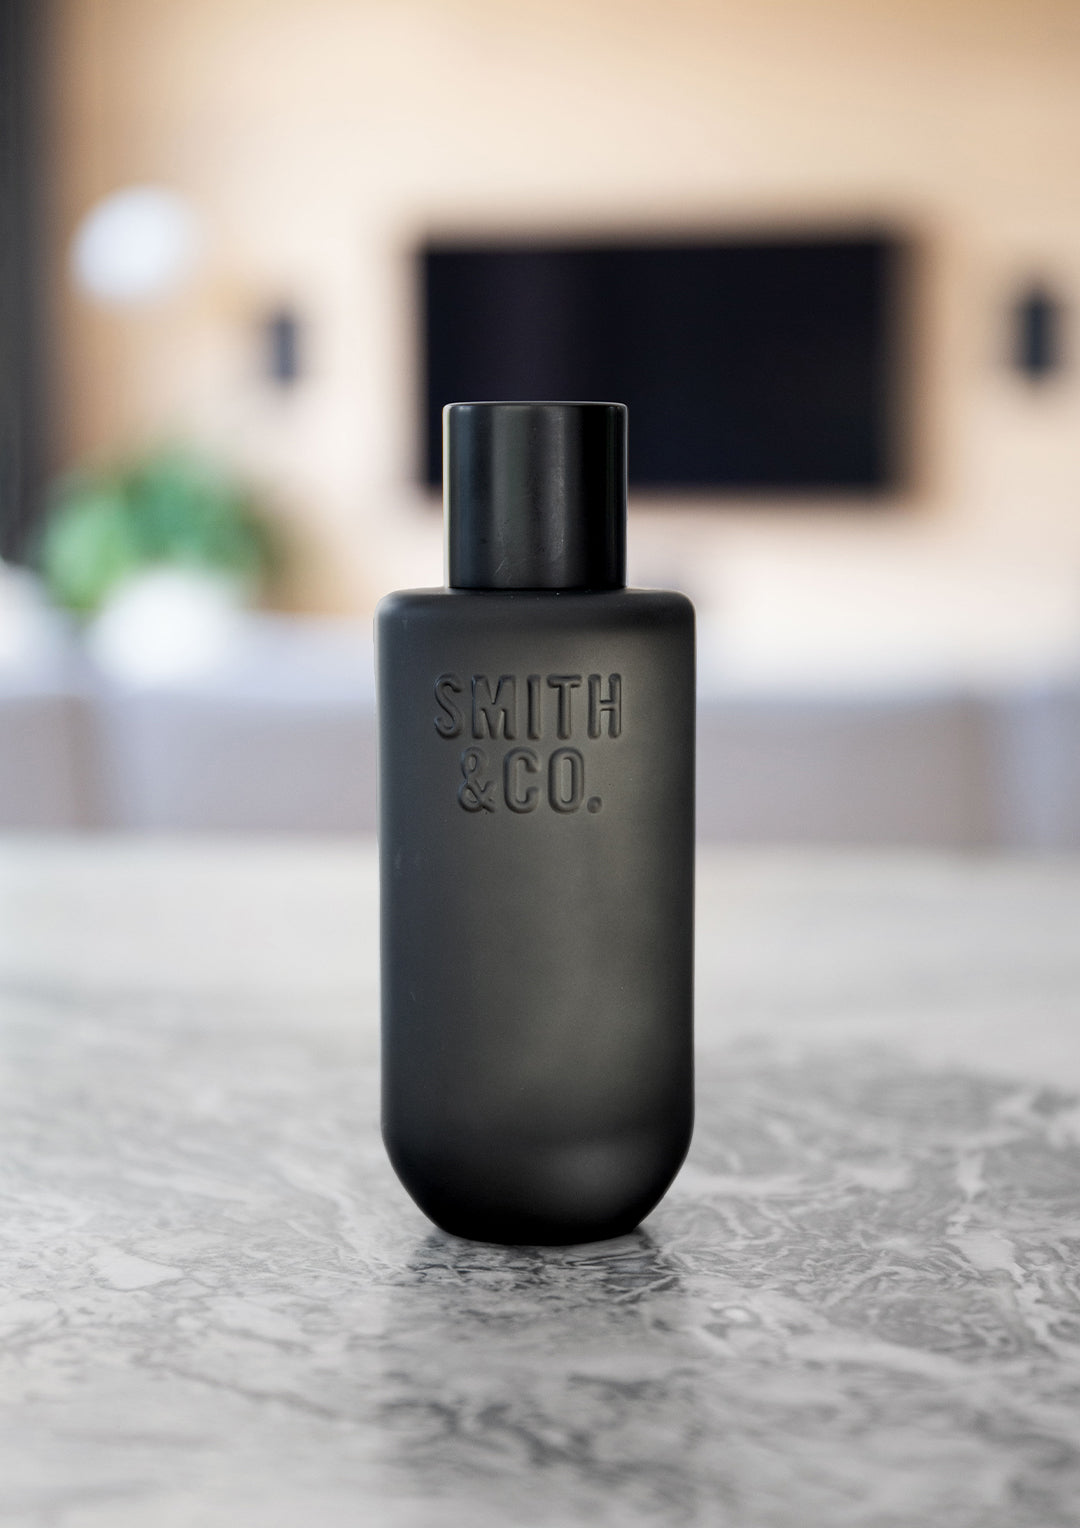 Smith & Co. Room Spray 100ml - Tabac & Cedar Wood